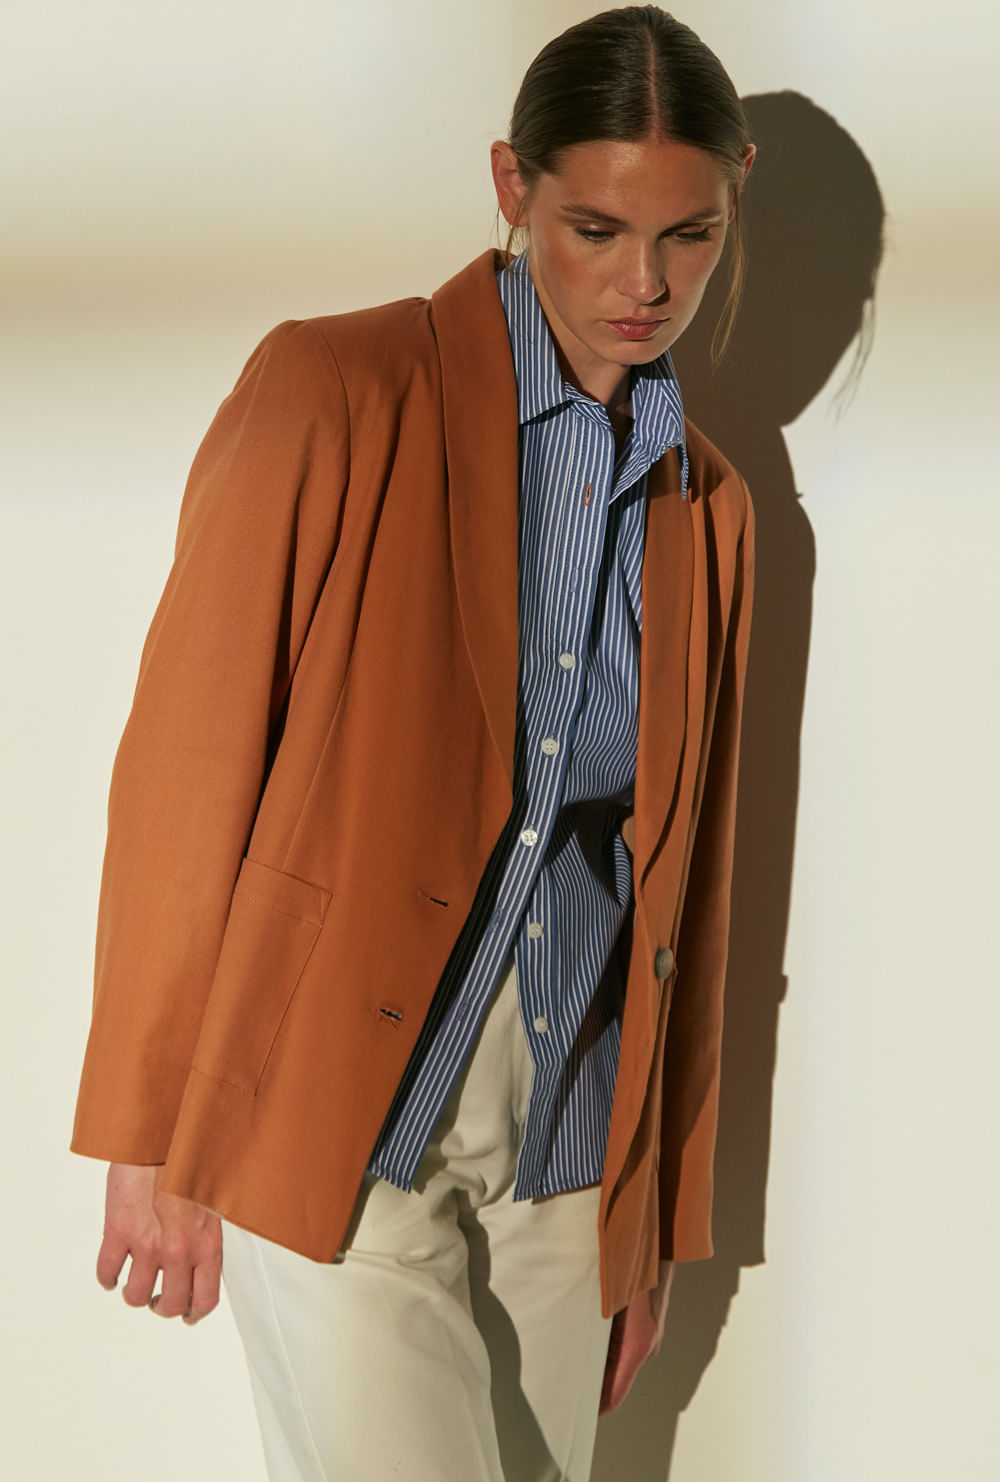 Oversized blazer in brown - The Sei